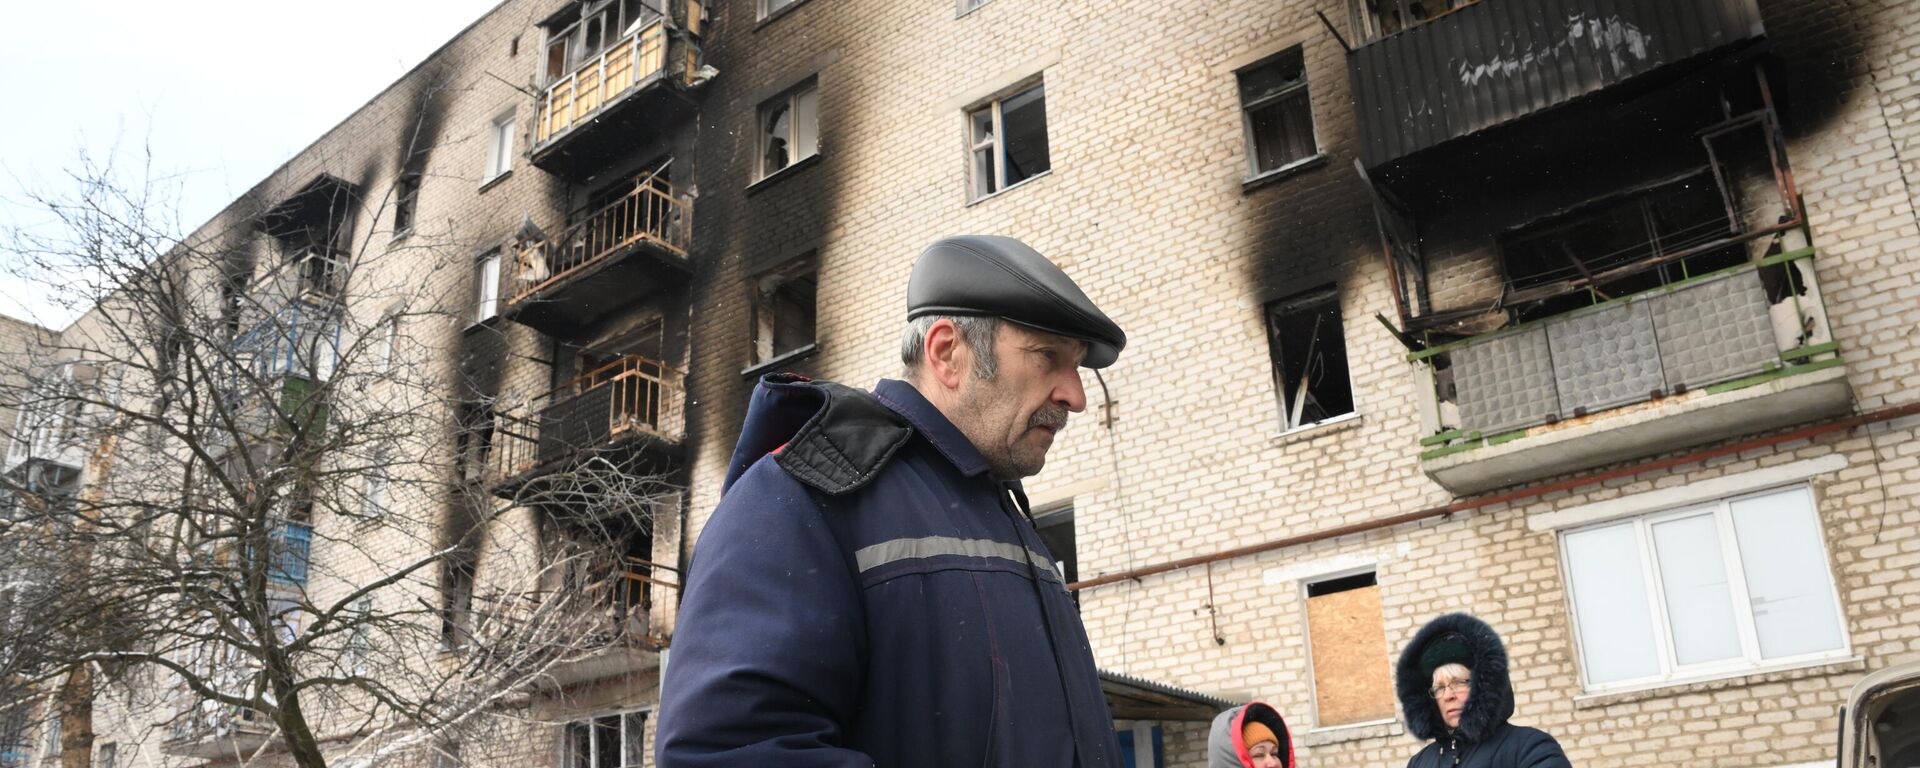 Cư dân địa phương gần một tòa nhà dân cư bị hư hại do pháo kích ở làng Donskoye, Cộng hòa Nhân dân Donetsk. - Sputnik Việt Nam, 1920, 10.03.2022